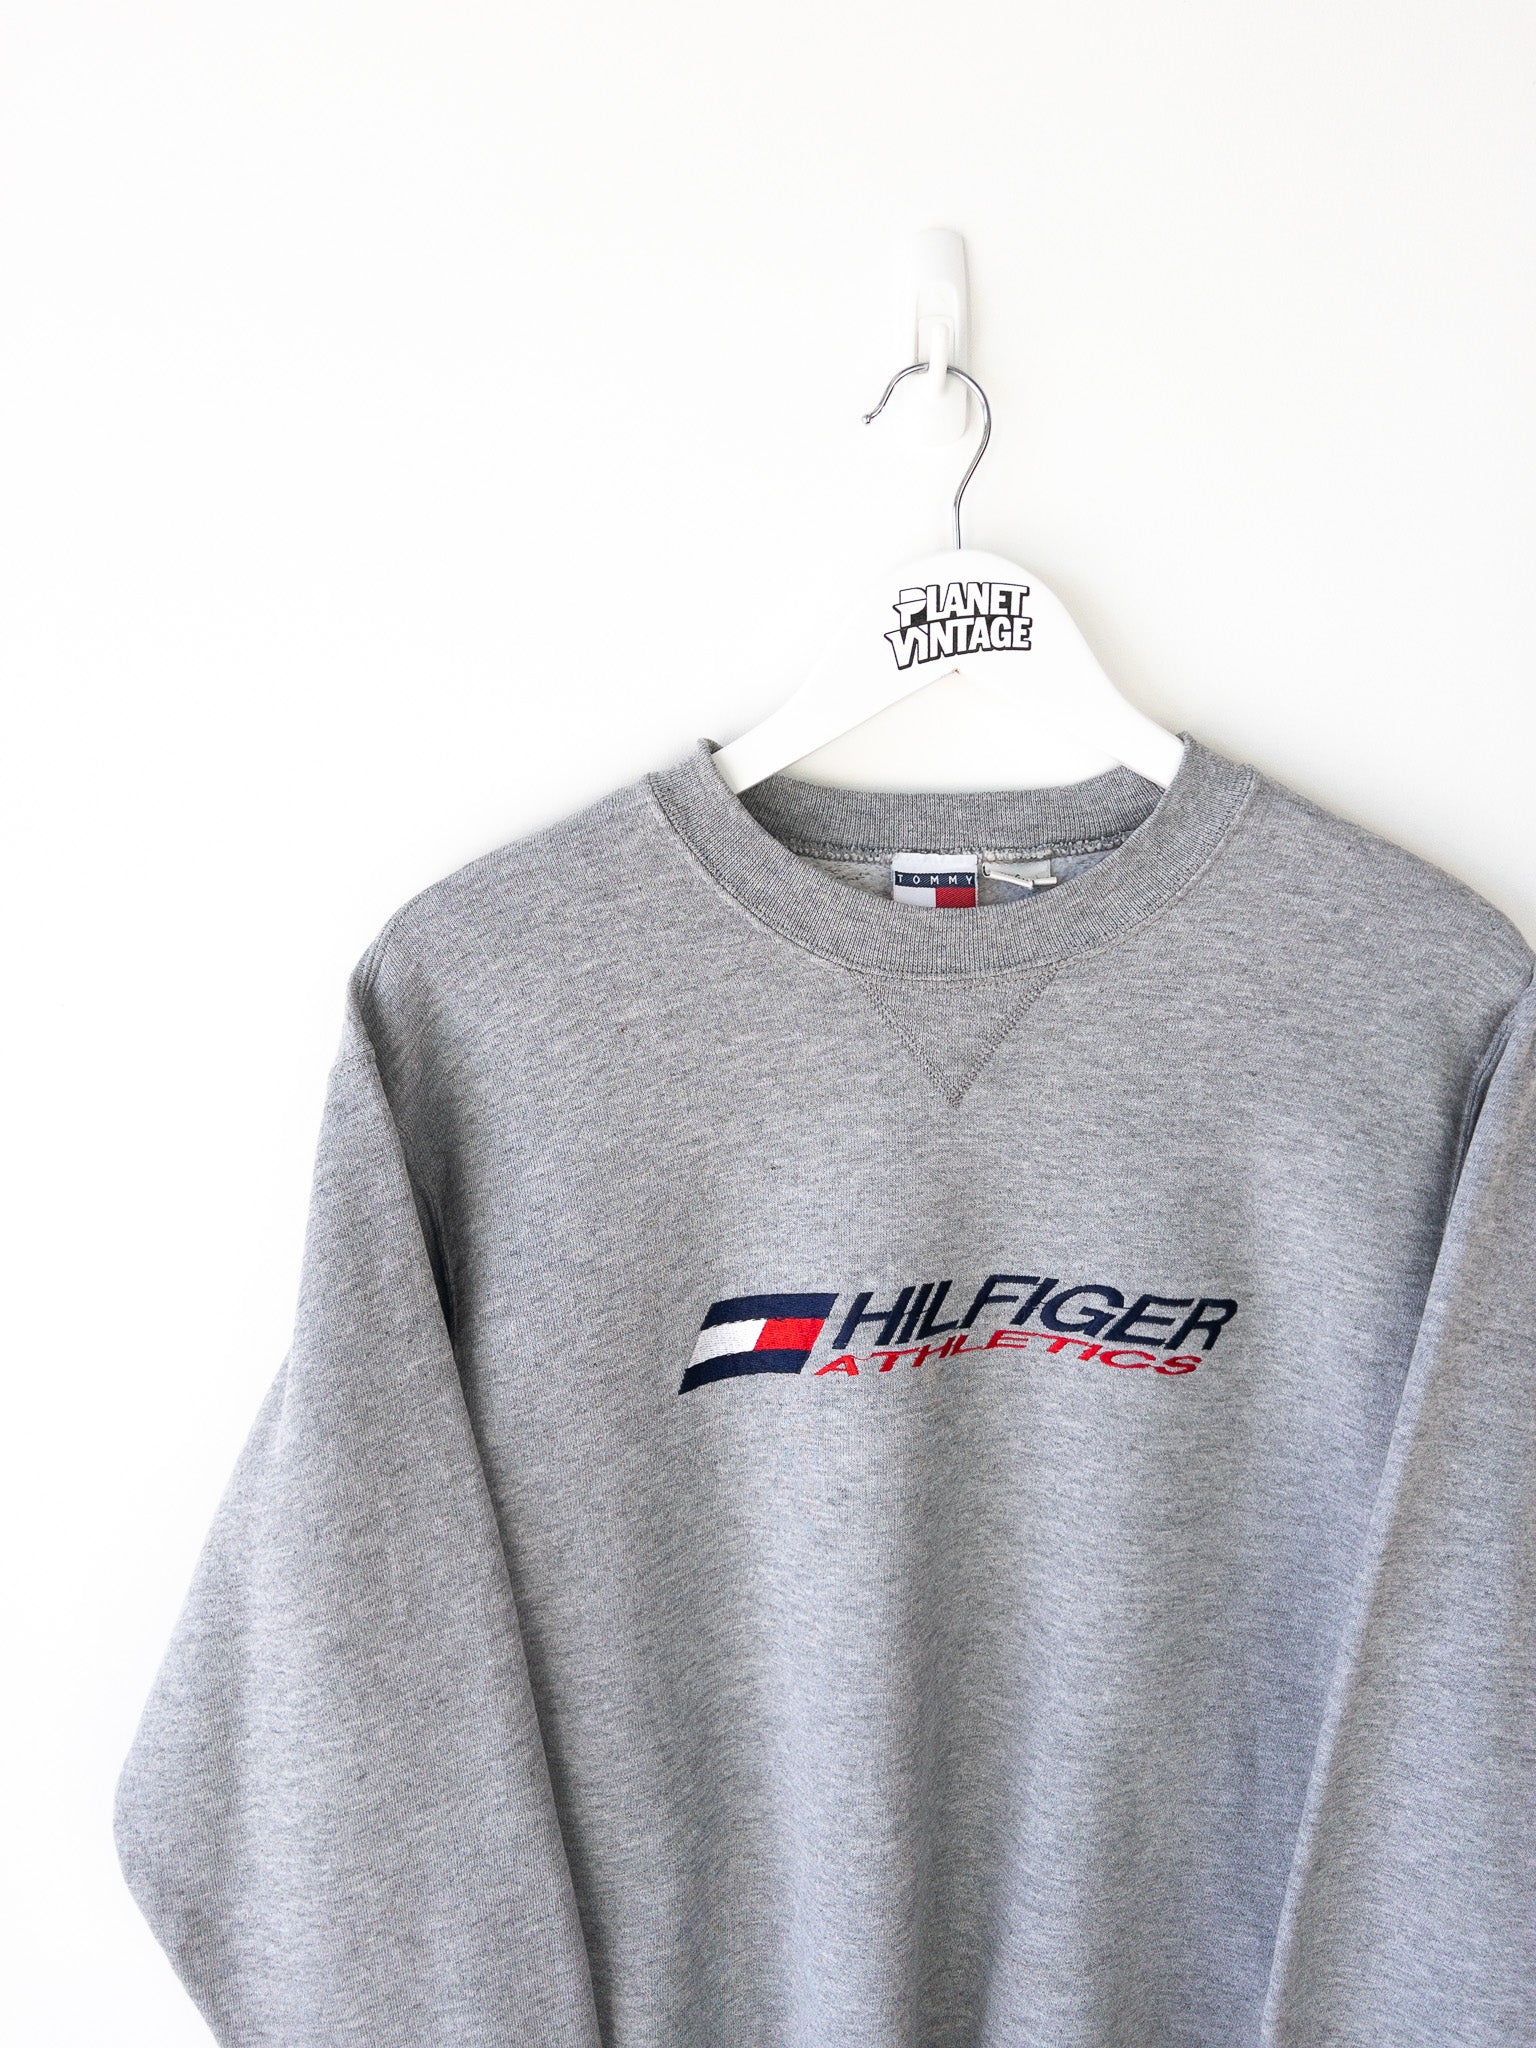 Vintage Tommy Hilfiger Athletics Sweatshirt (S)